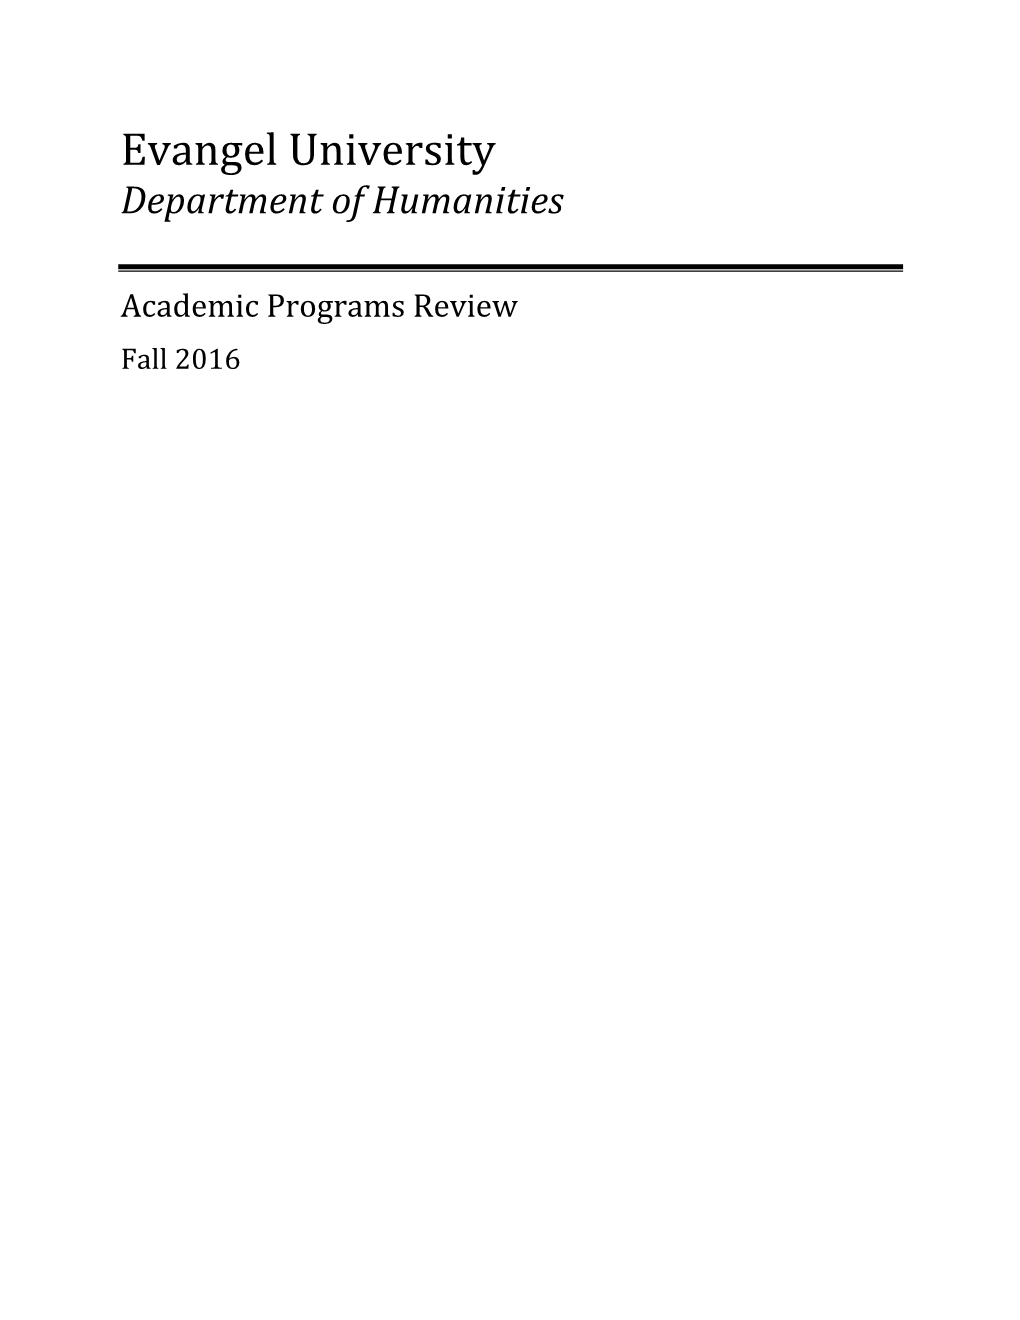 Department of Humanities